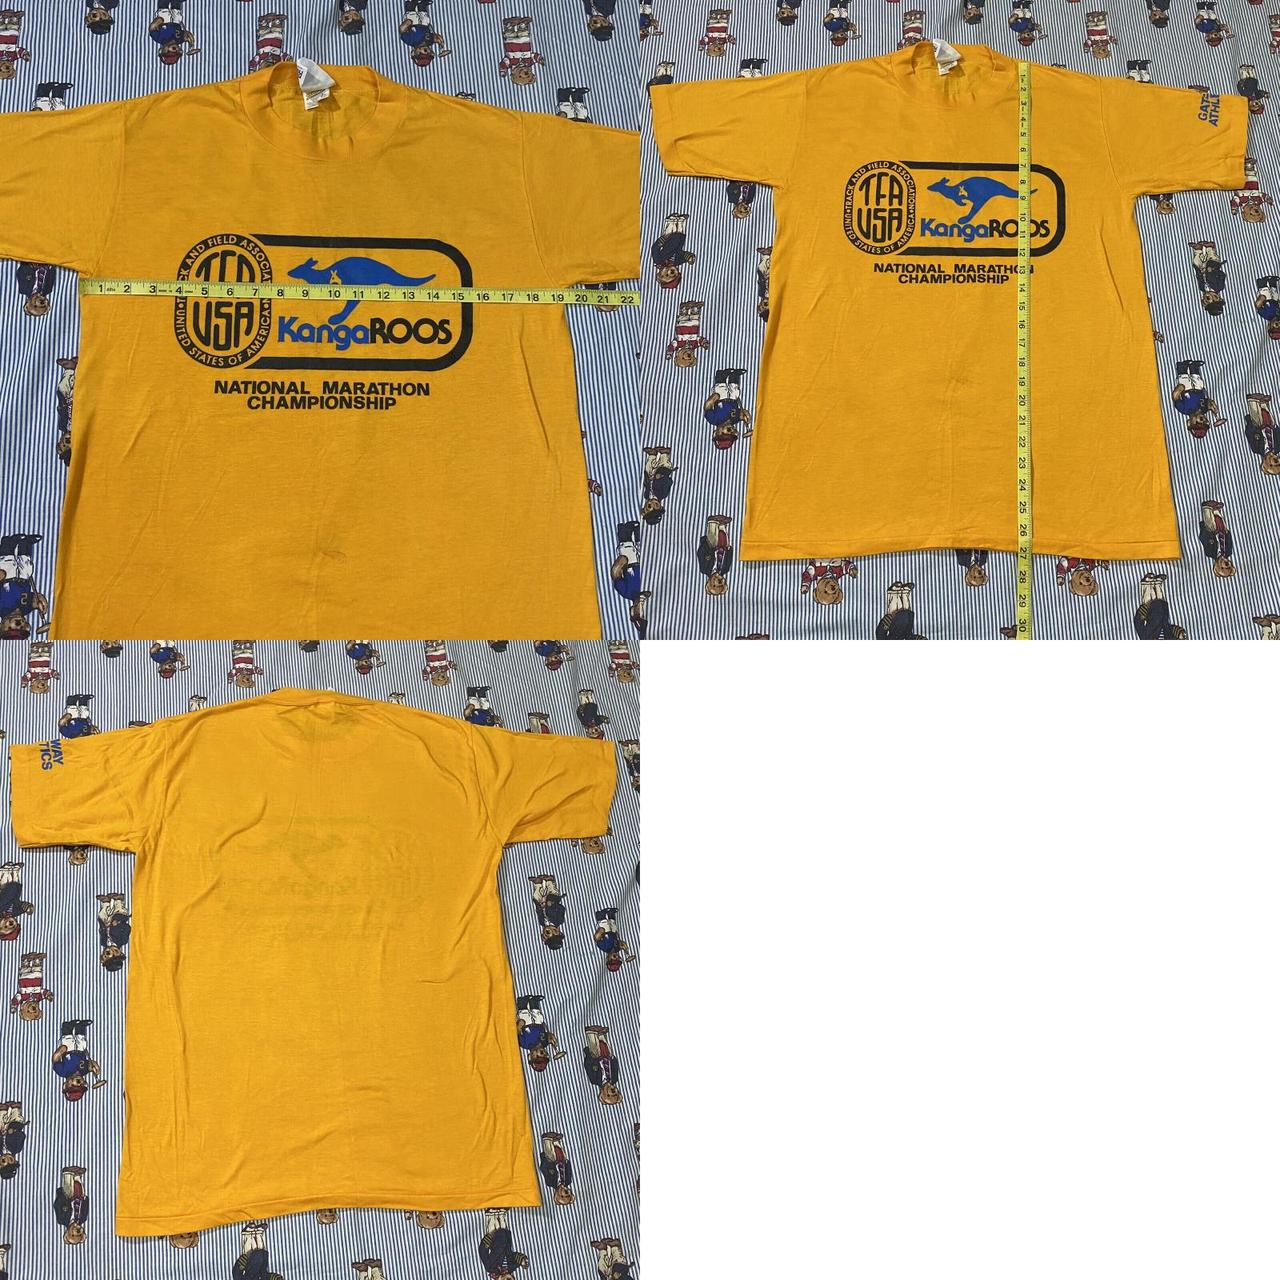 Kangaroo Poo Men's Yellow T-shirt (4)